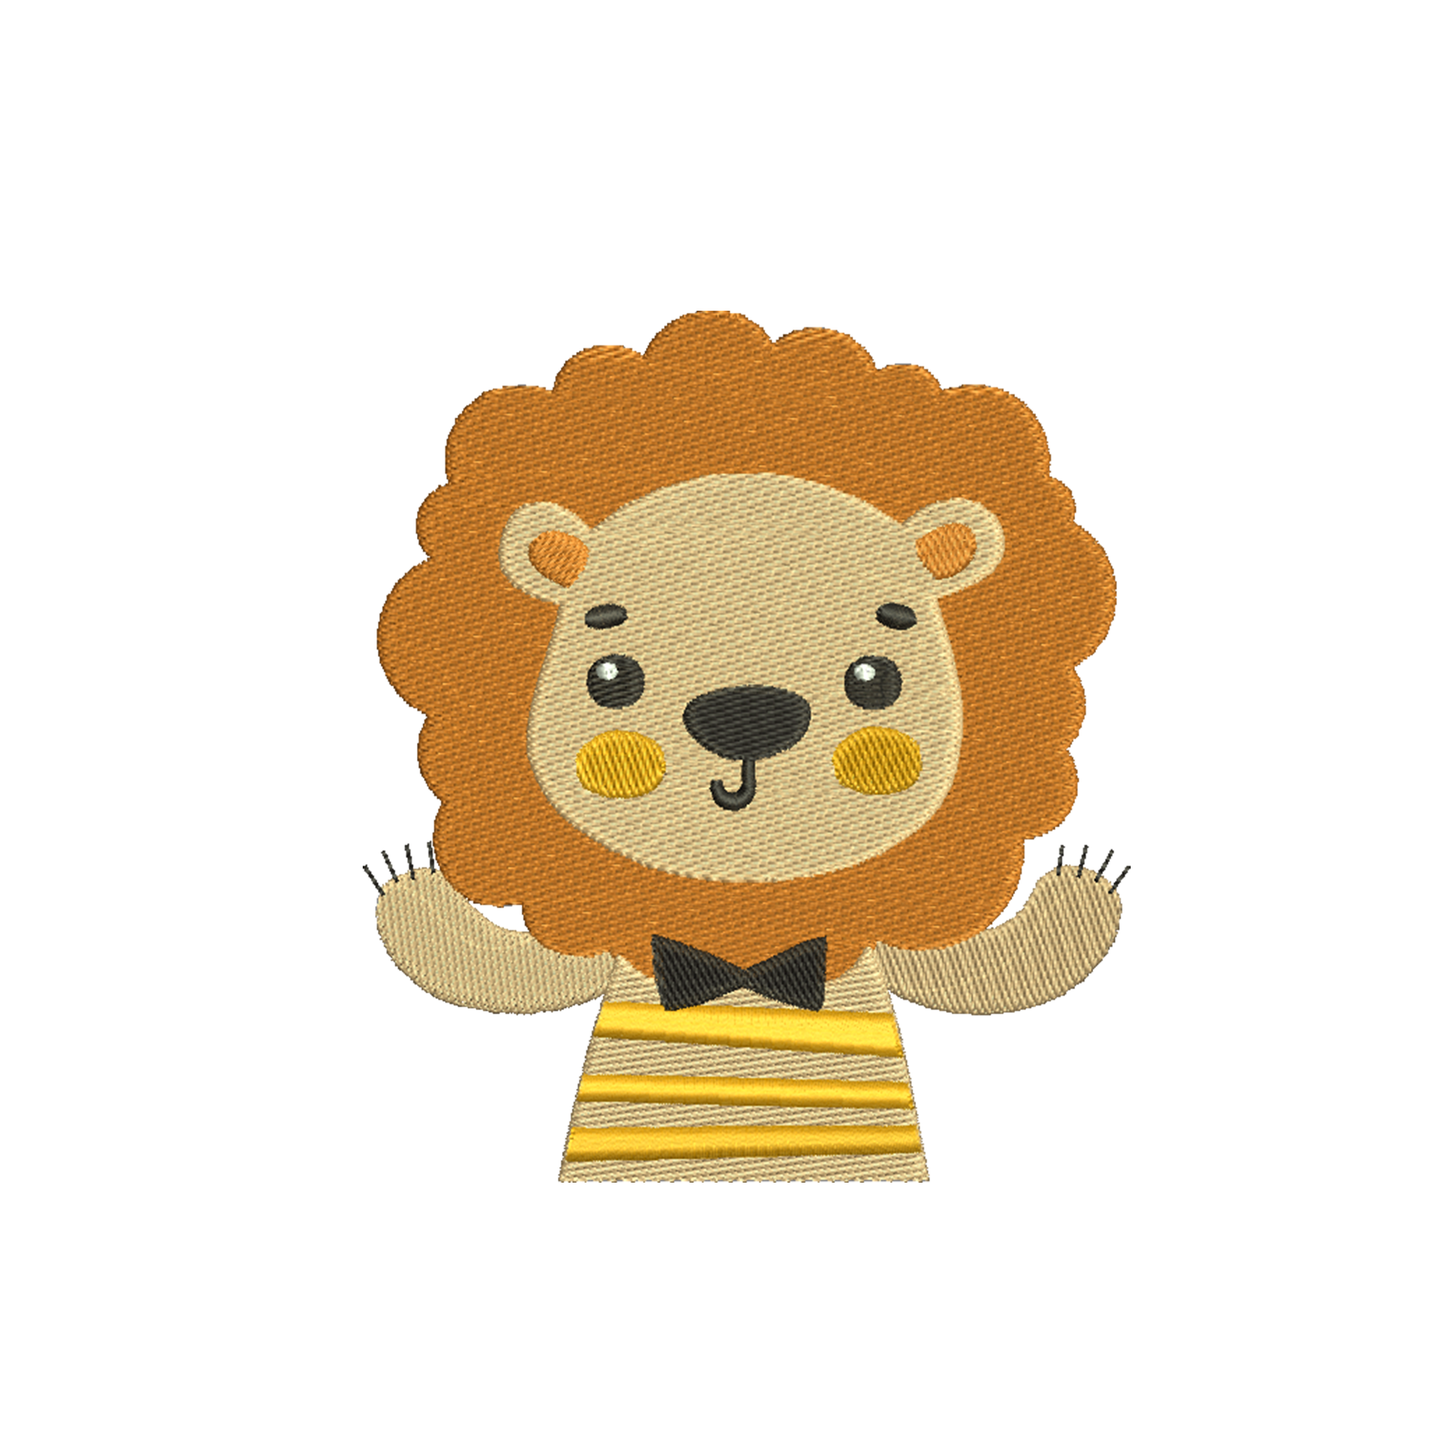 Lion Embroidery Machine Designs Animals - 170128